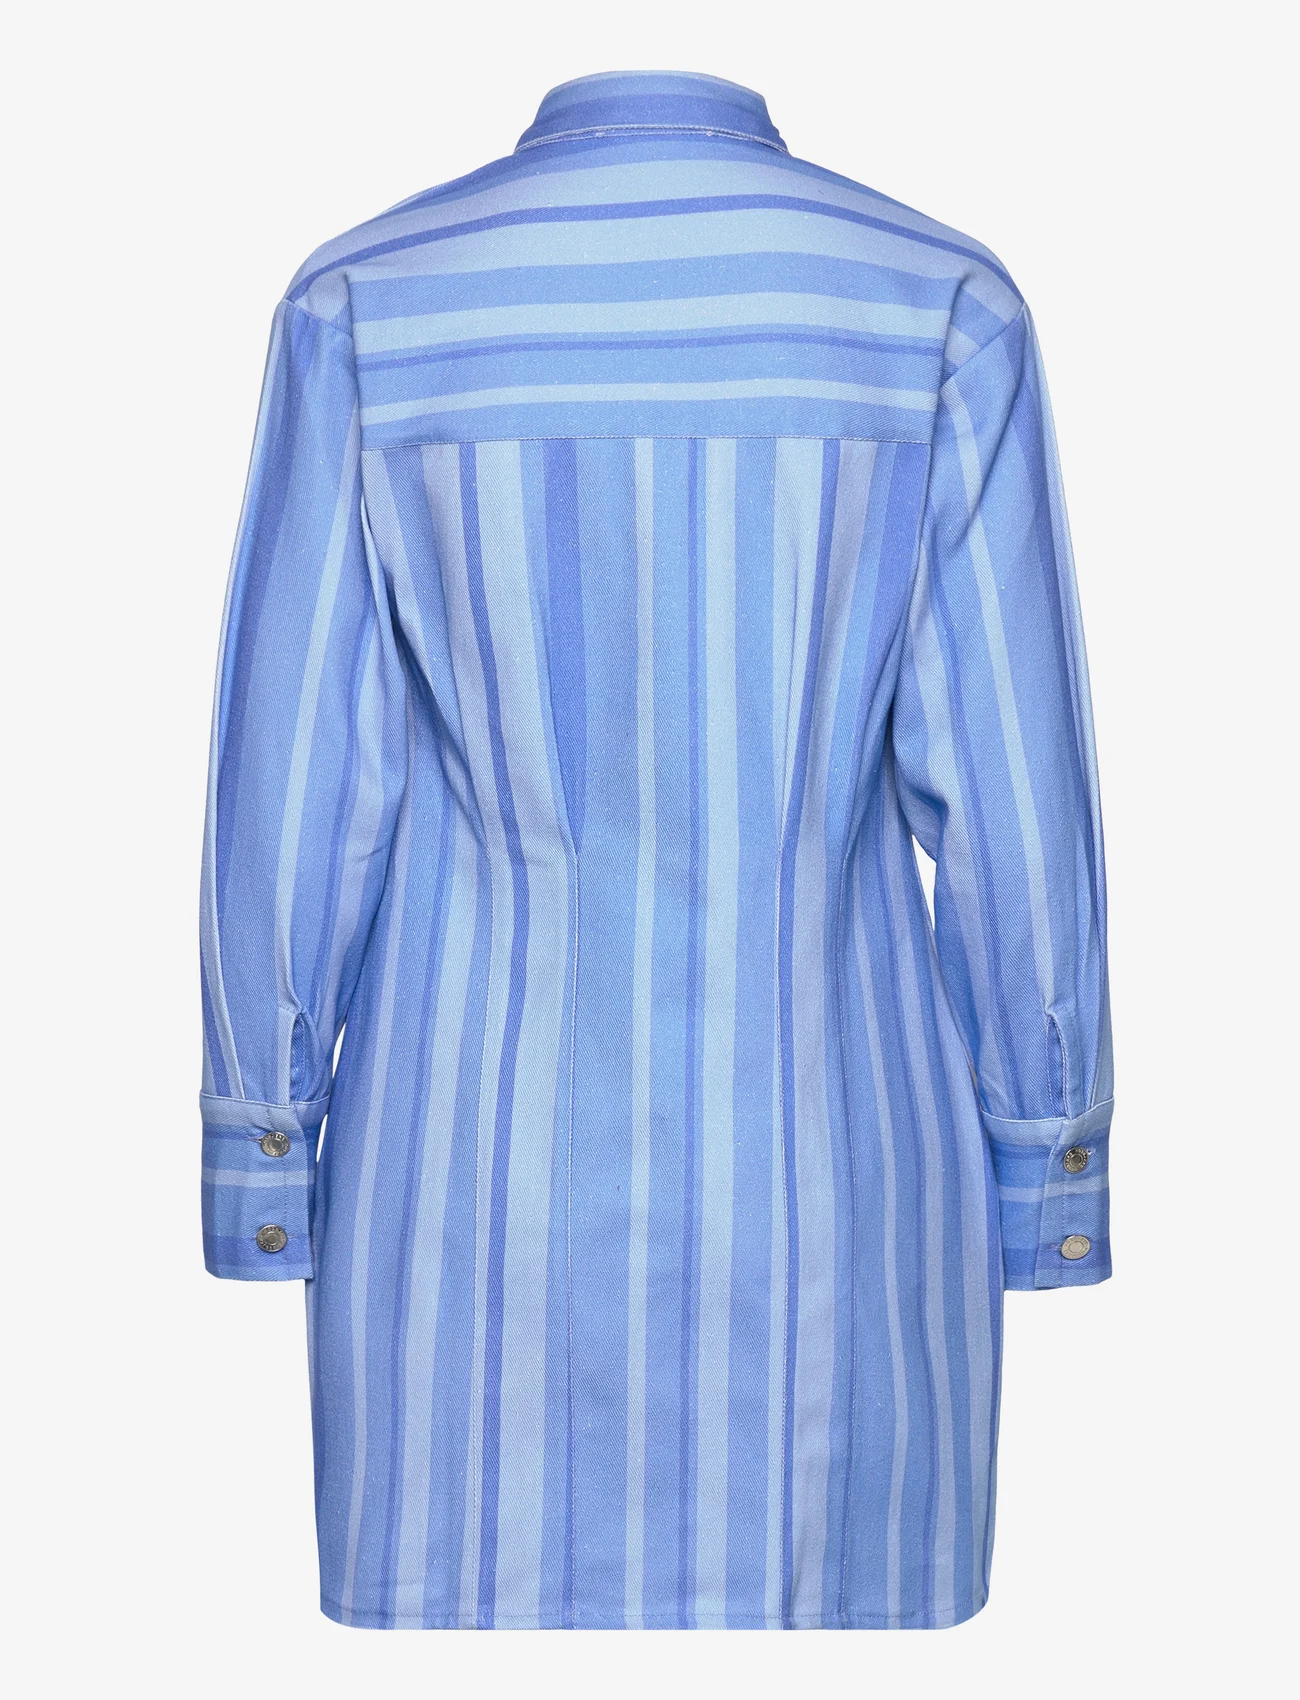 Hosbjerg - Juki Volume Dress - hemdkleider - blue stripe - 1